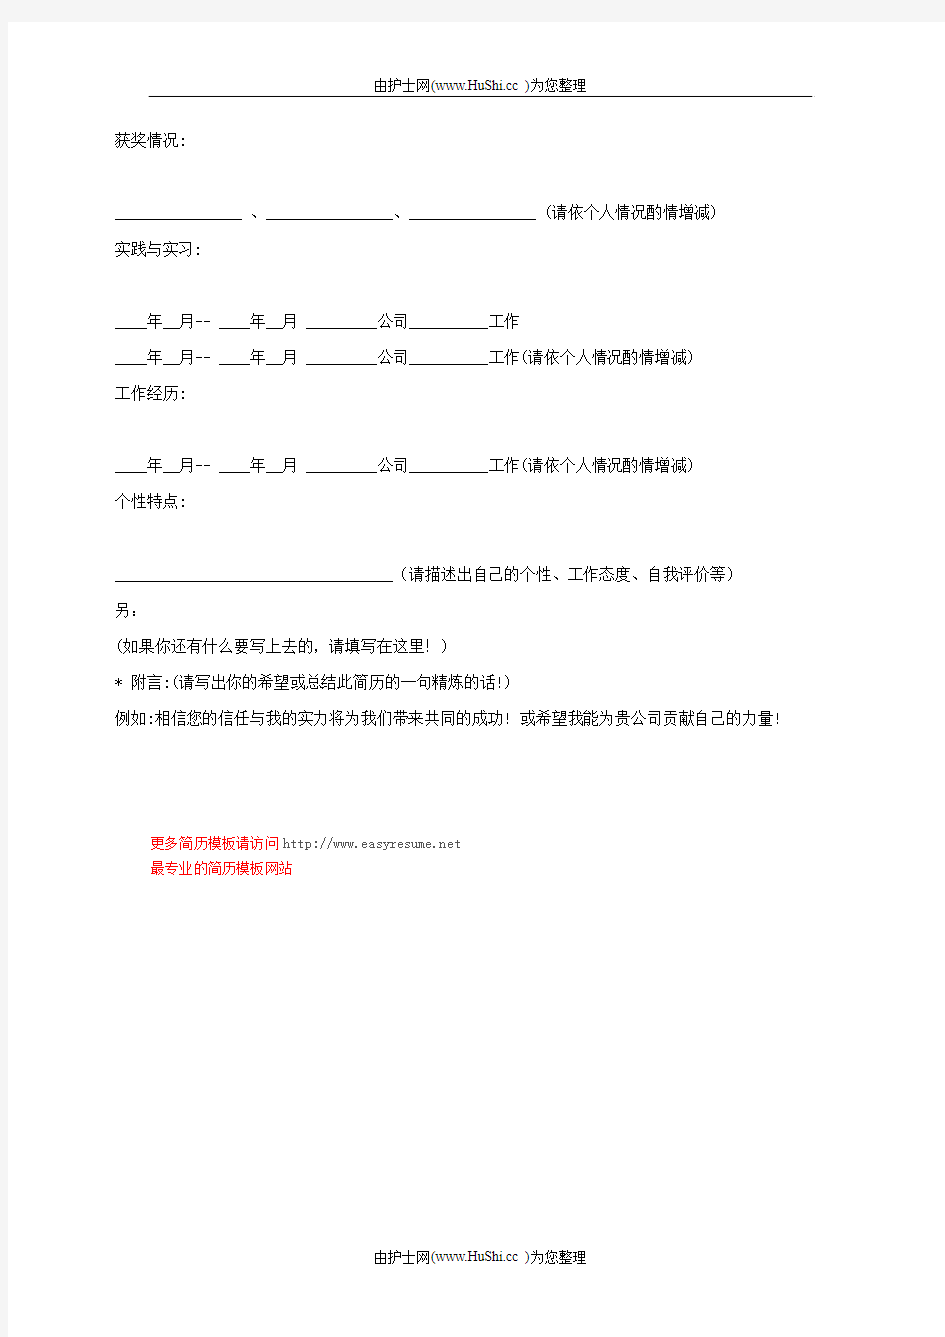 中文简历模板 (6)